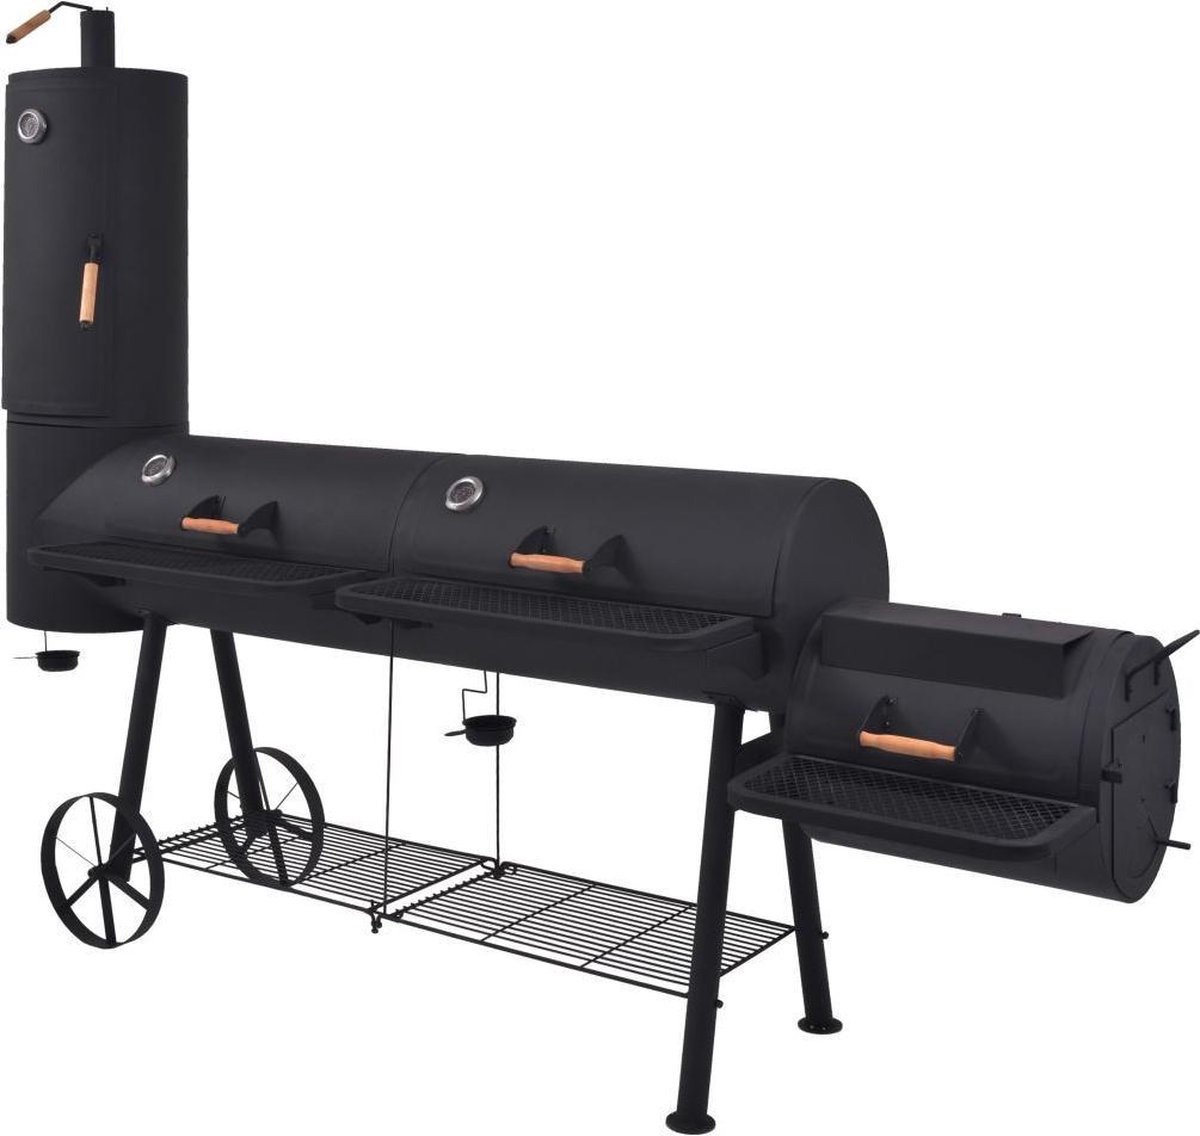 Vidaxl Houtskoolbarbecue Met Onderplank Xxxl - Negro